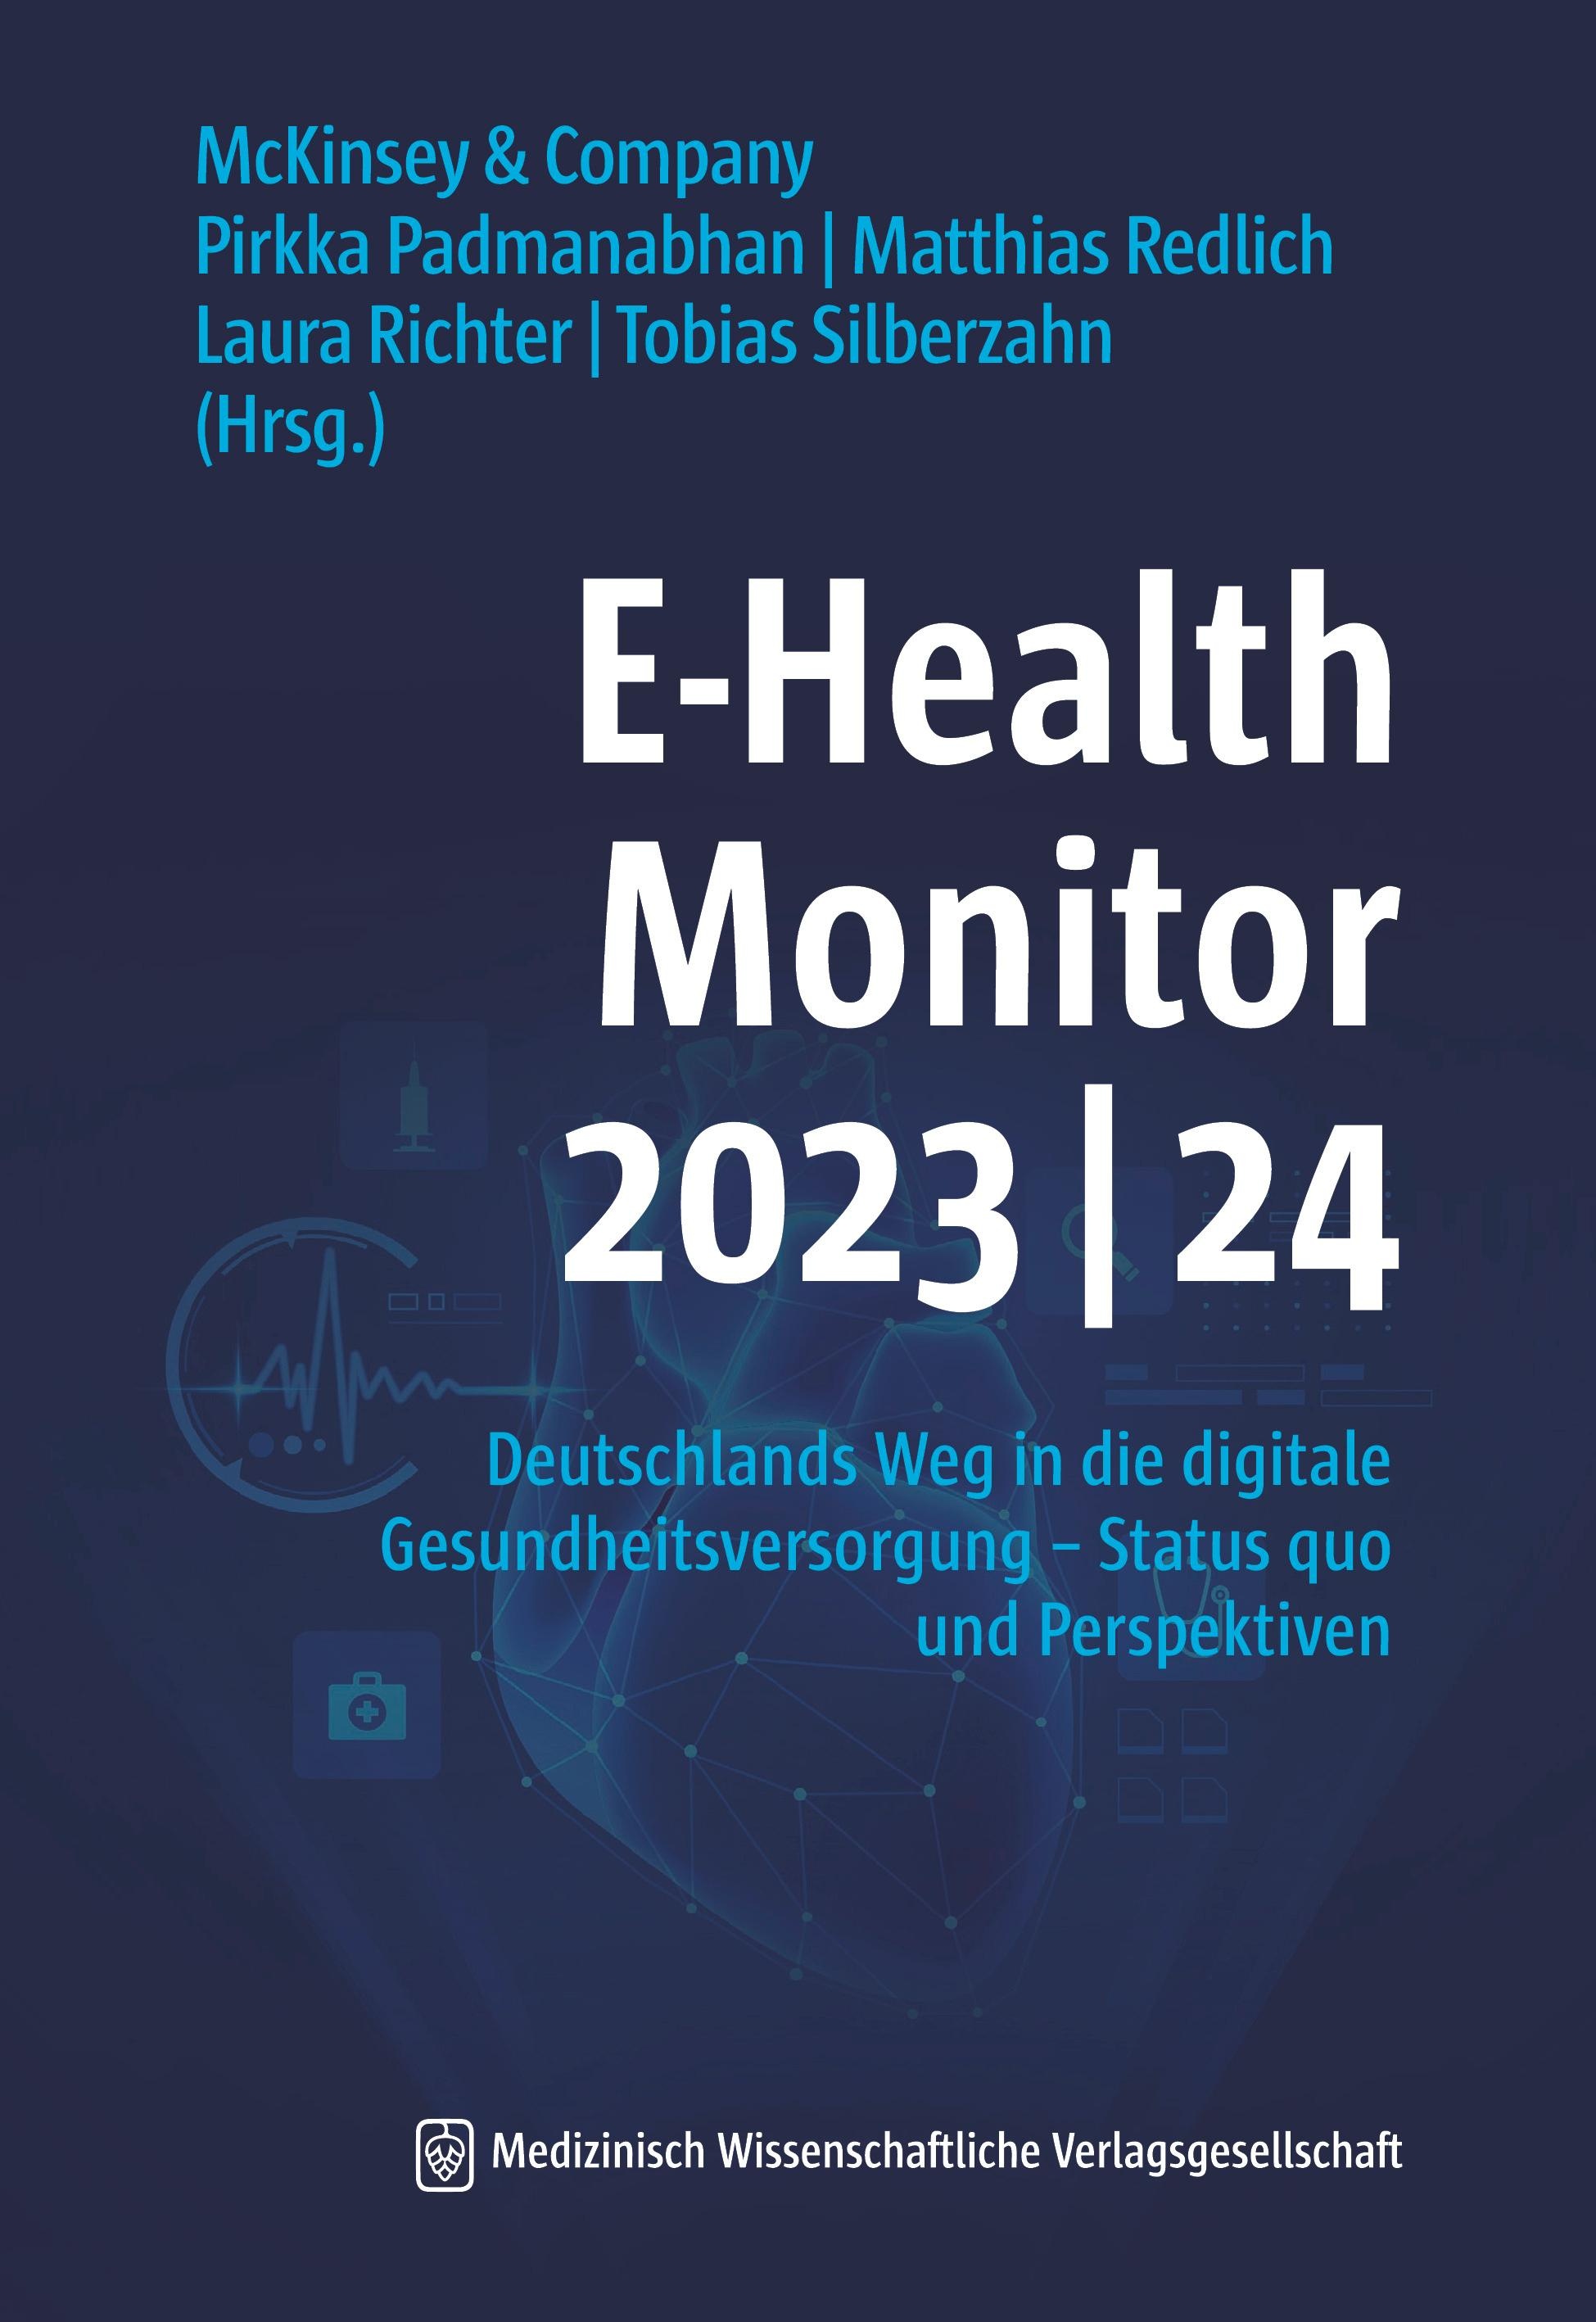 E-Health Monitor 2023/24, Fachbücher von Laura Richter, Matthias Redlich, McKinsey & Company, Pirkka Padmanabhan, Tobias Silberzahn